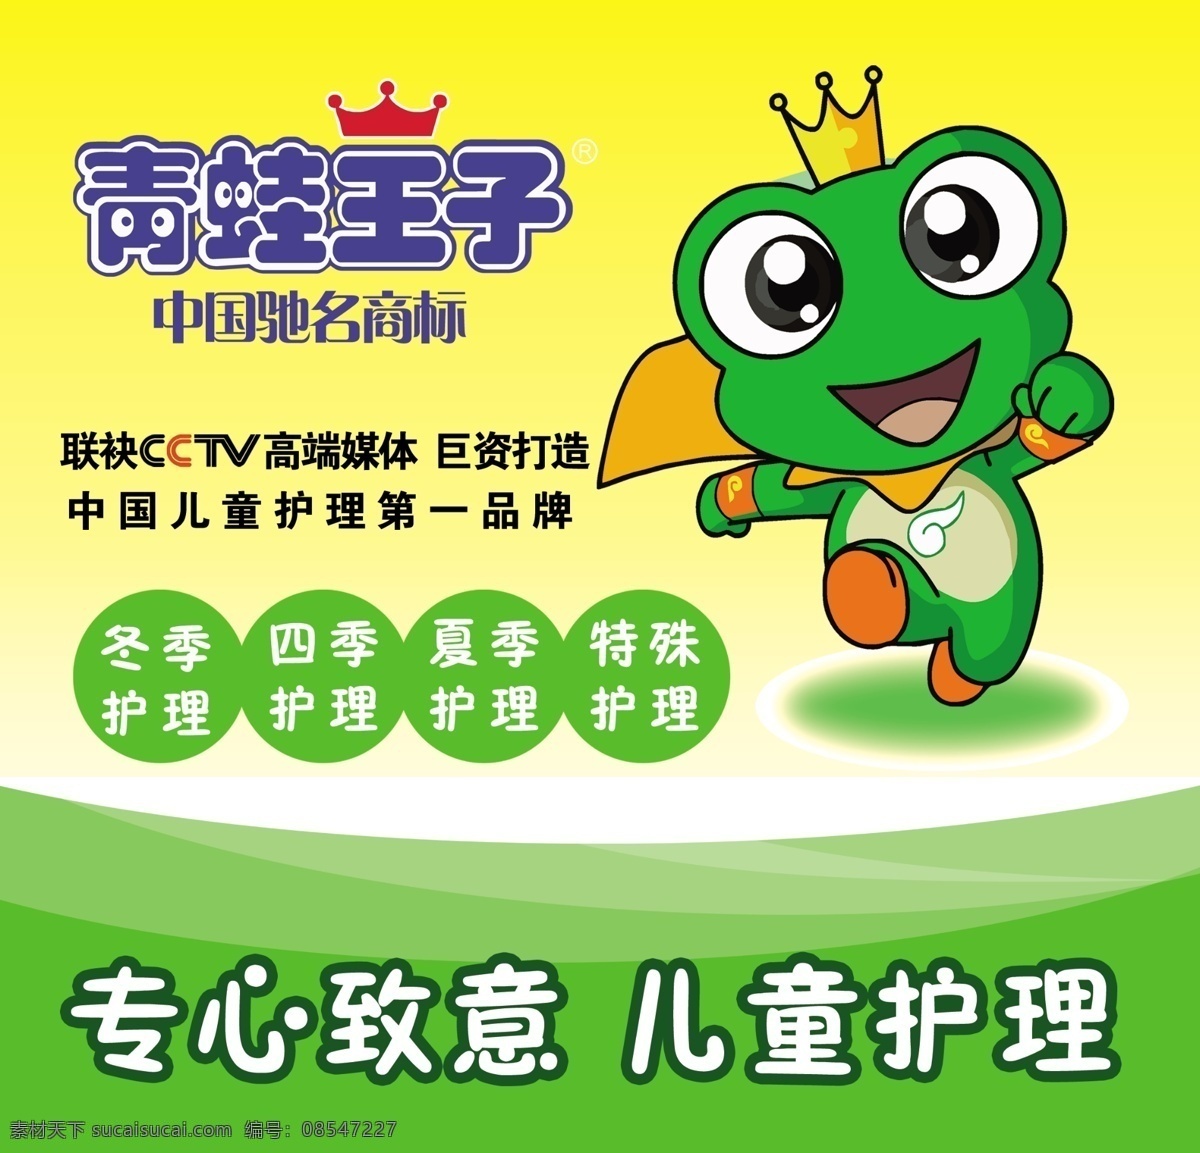 青蛙王子 儿童护理 青蛙 青蛙小王子 青蛙护理 广告设计模板 源文件